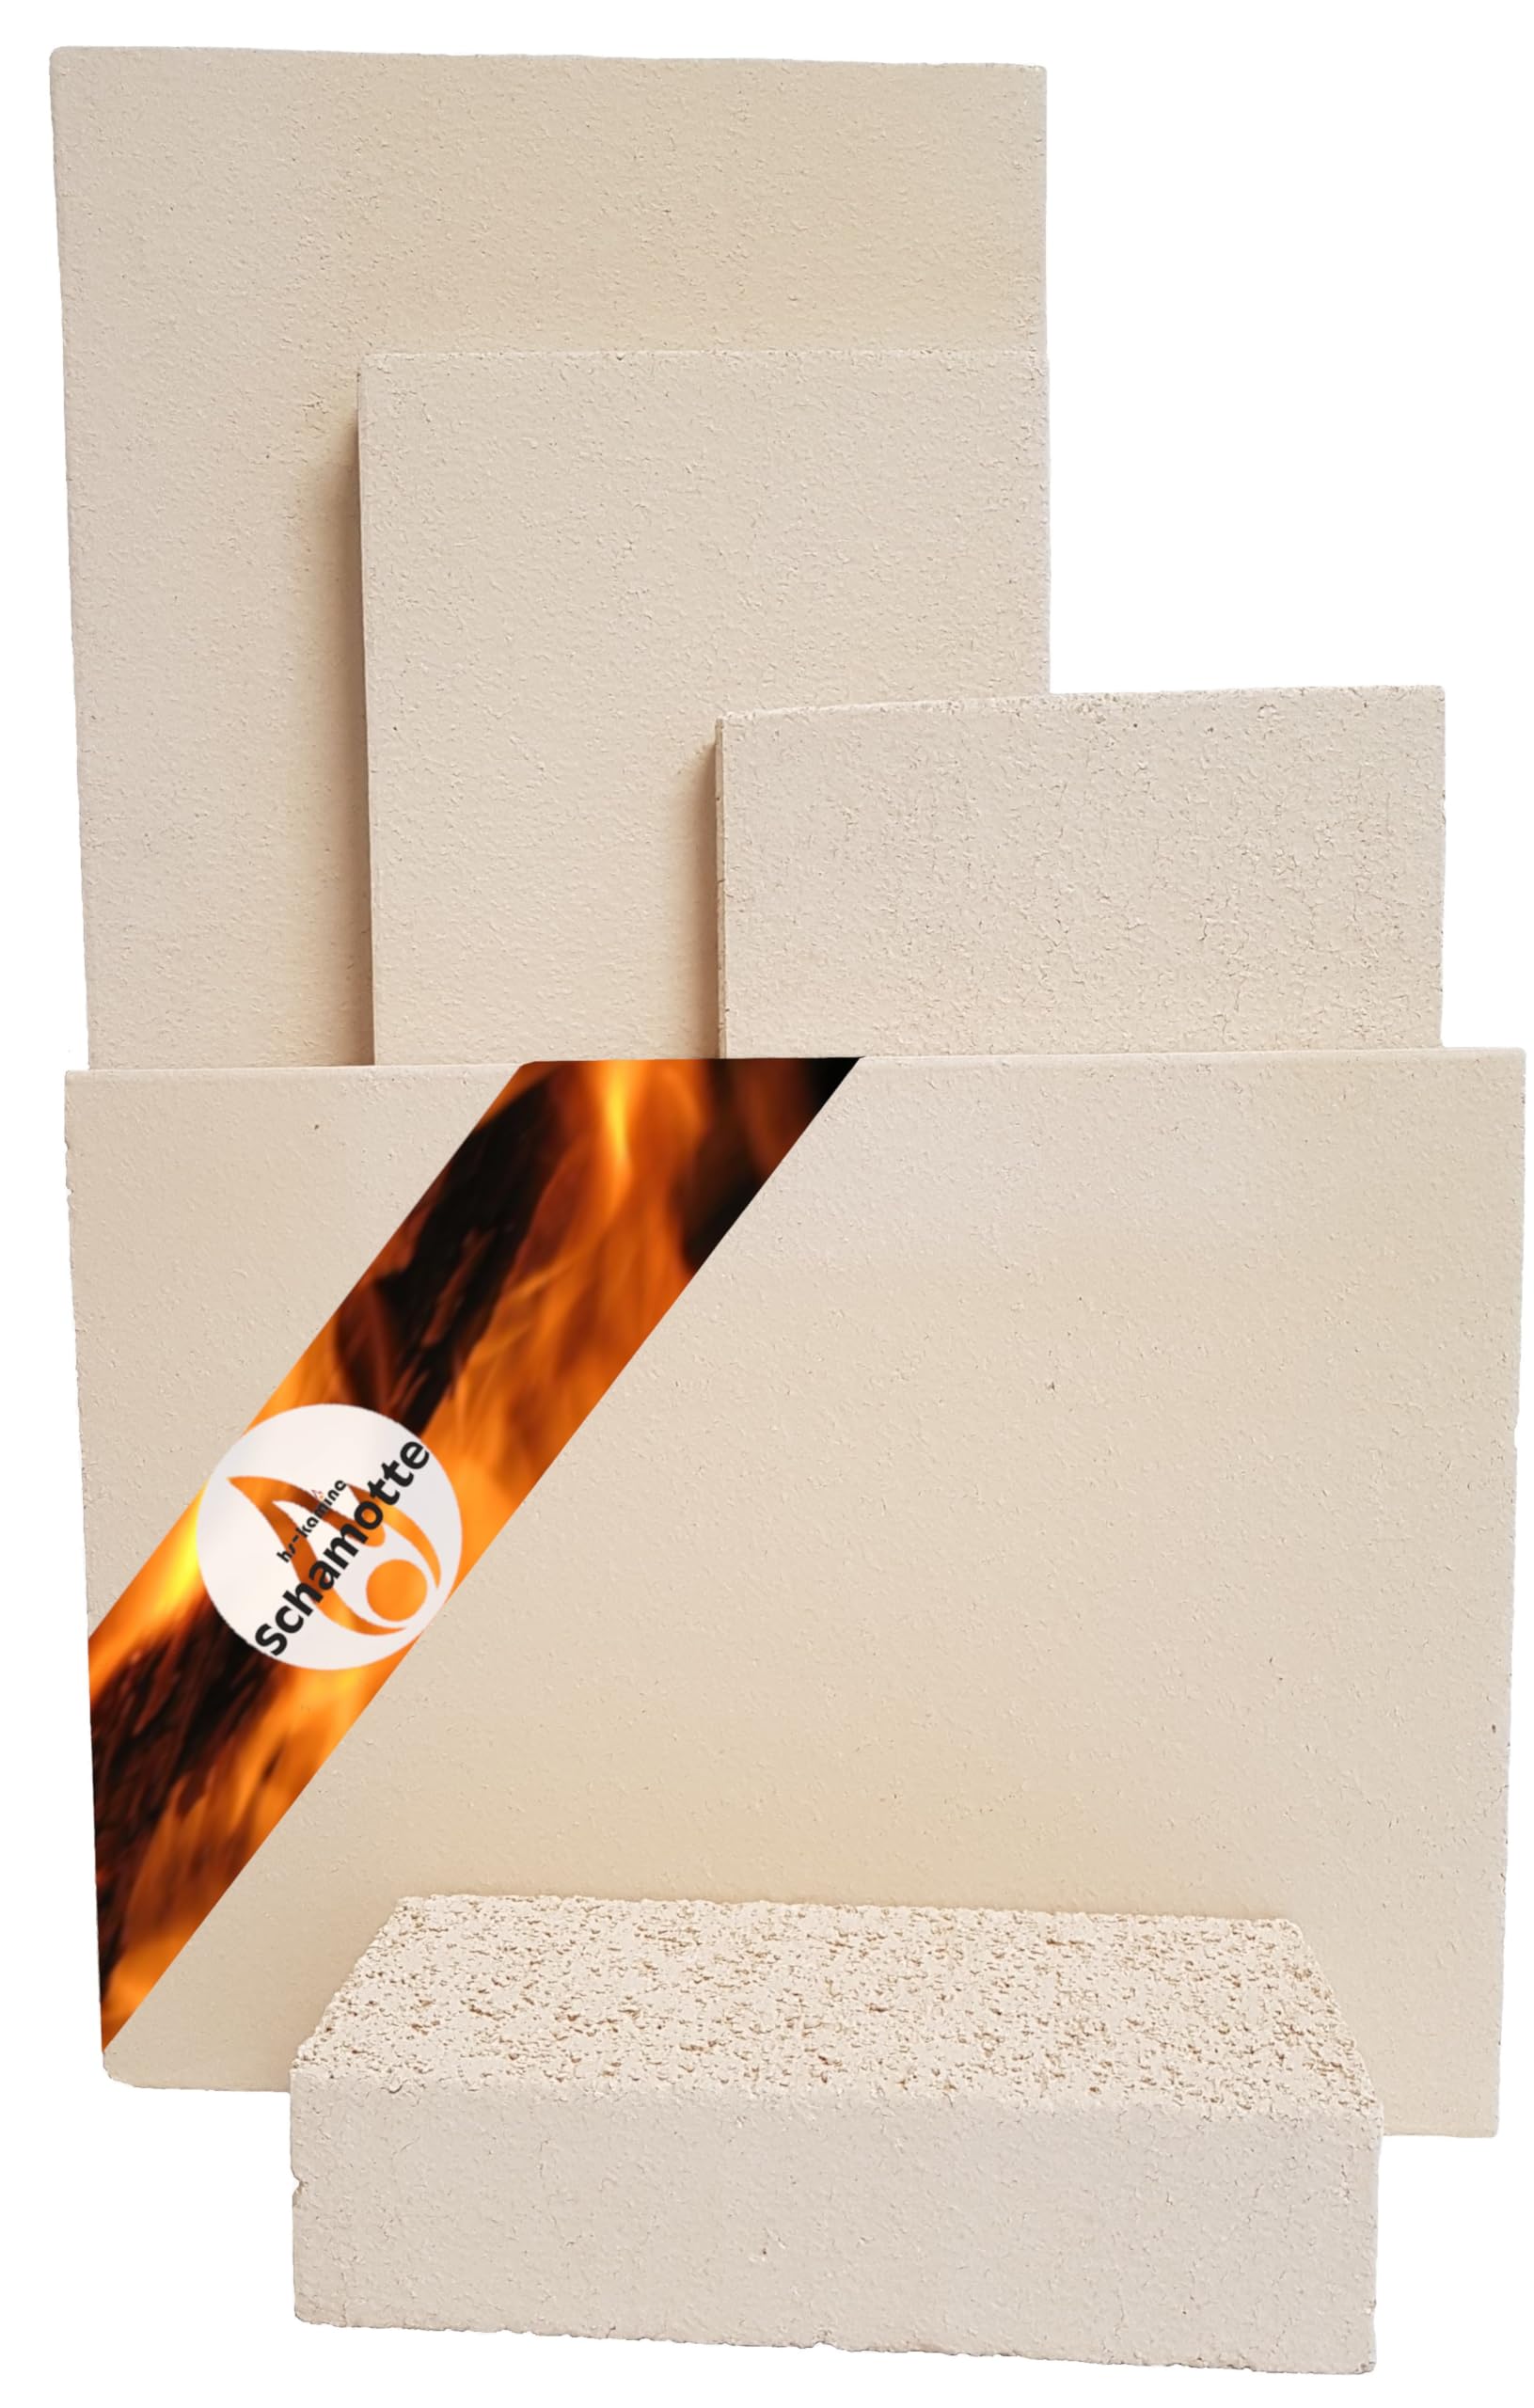 Schamotteplatten Premium Wh für den Feuerraum und auch für Holzbacköfen, Pizzaöfen und Grills feuerfest & lebensmittelecht viele Größen online verfügbar (500 x 300 x 30 mm, 1 Stück)